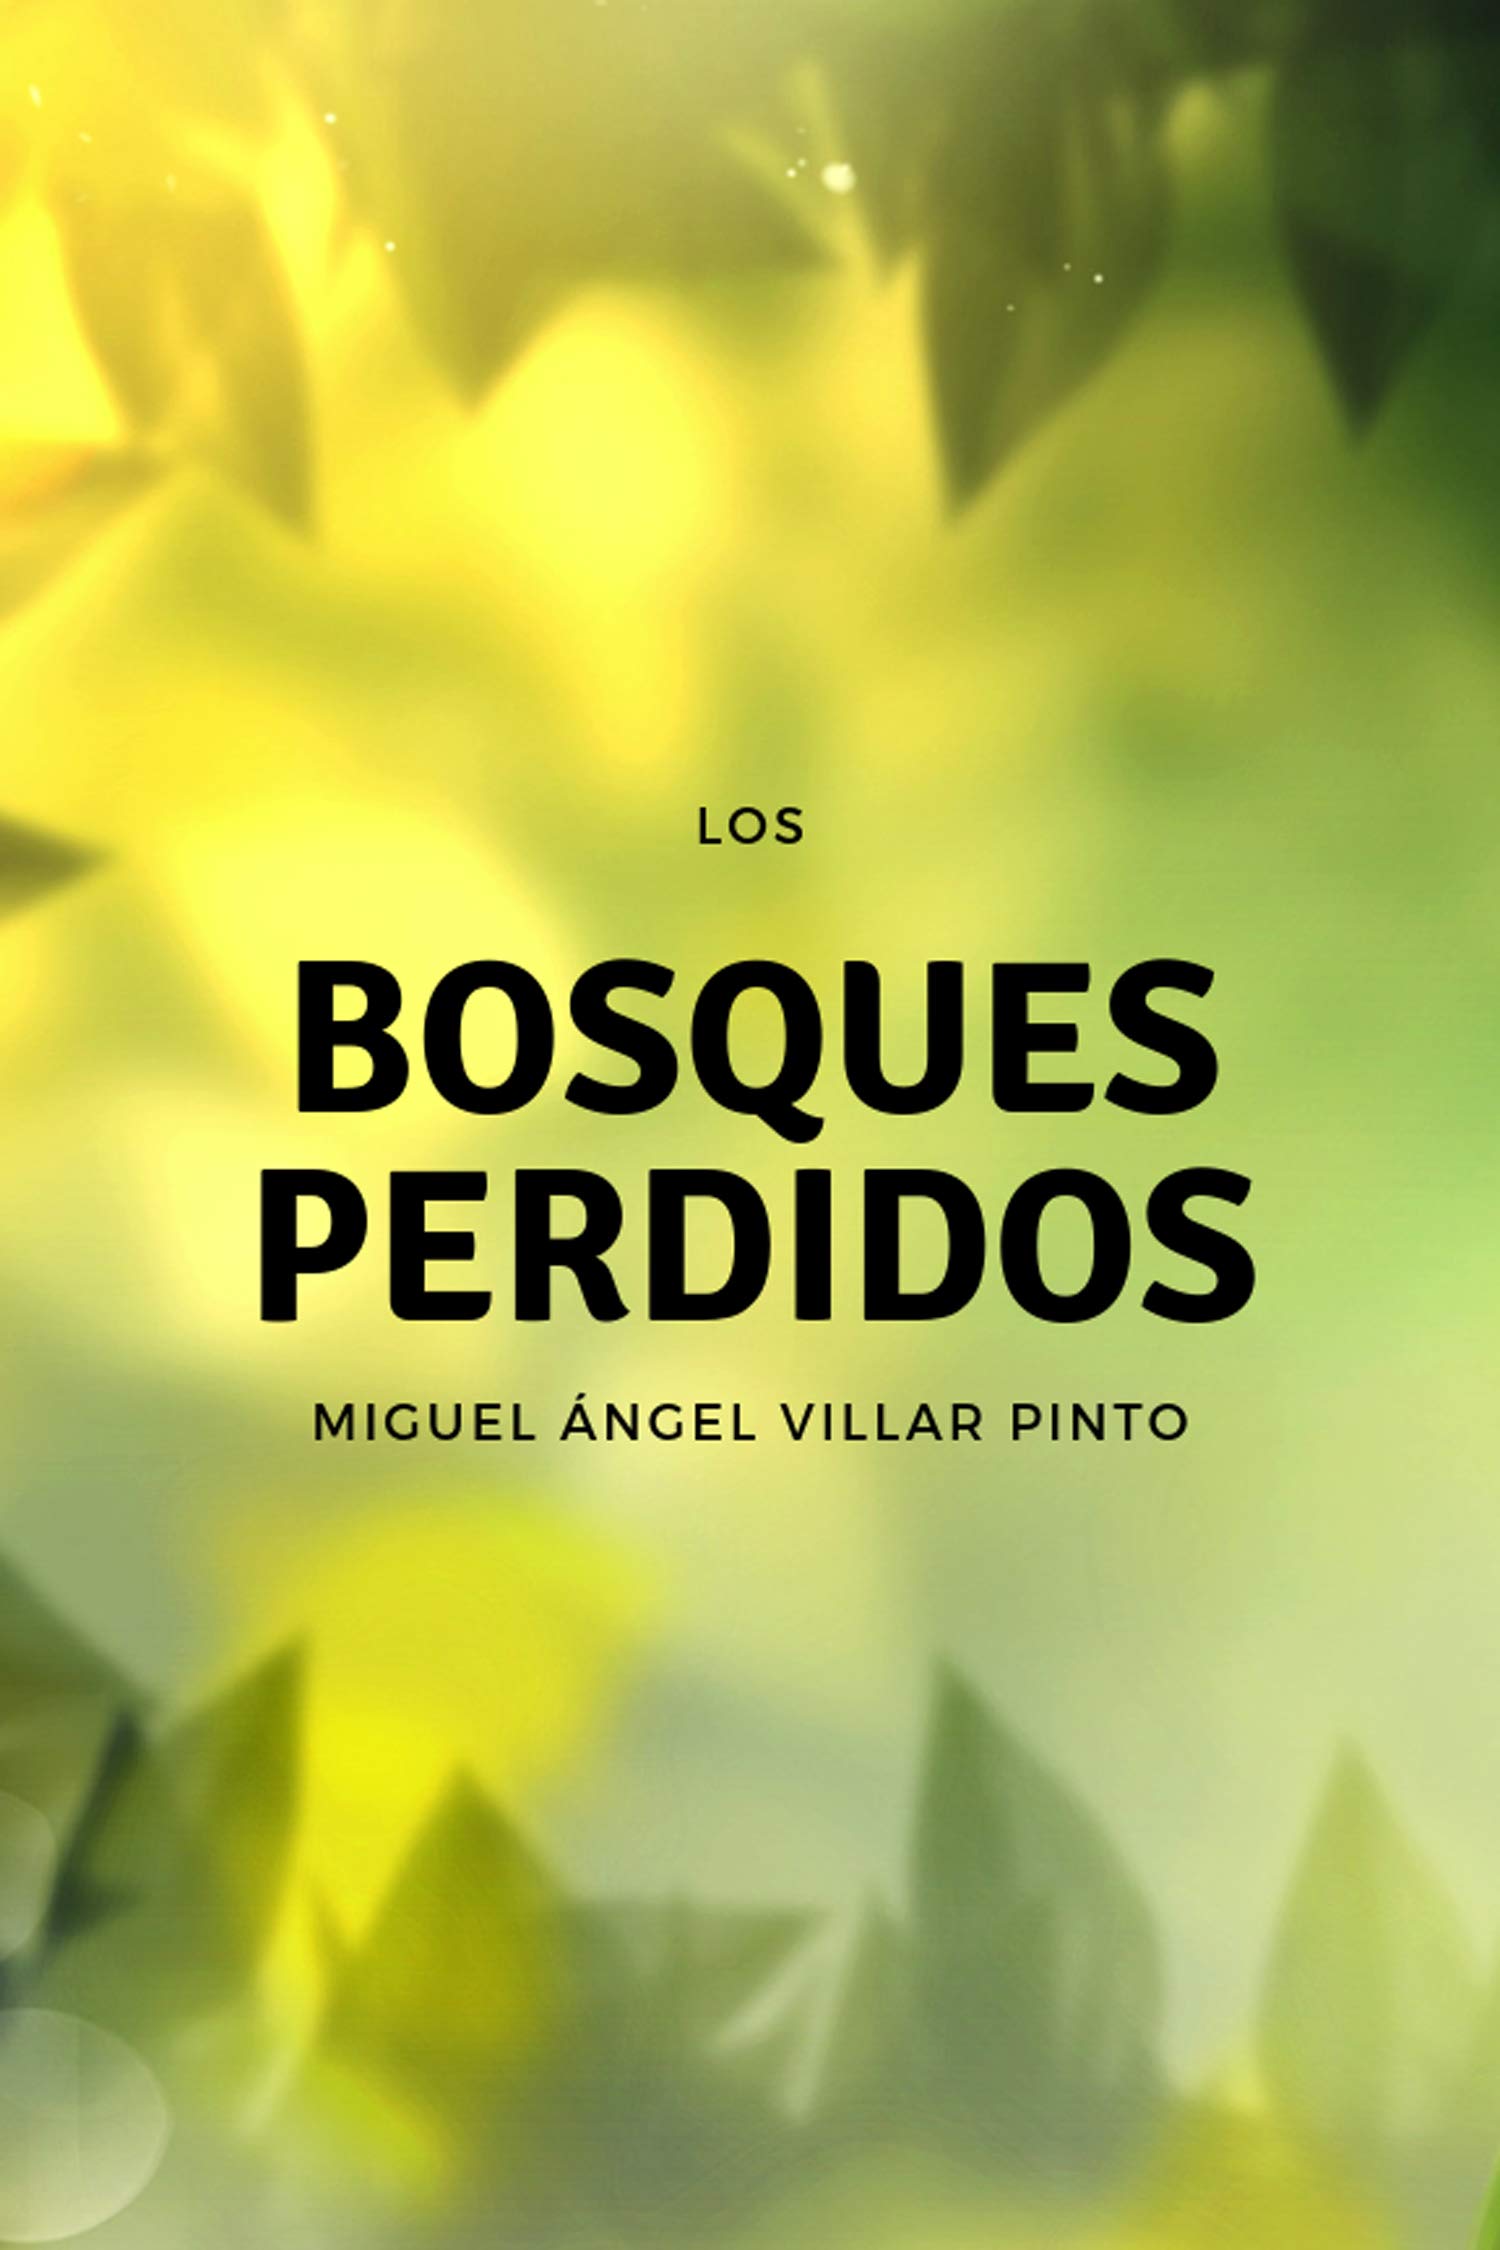 Los bosques perdidos (Cuentos maravillosos nº 2) (Spanish Edition)